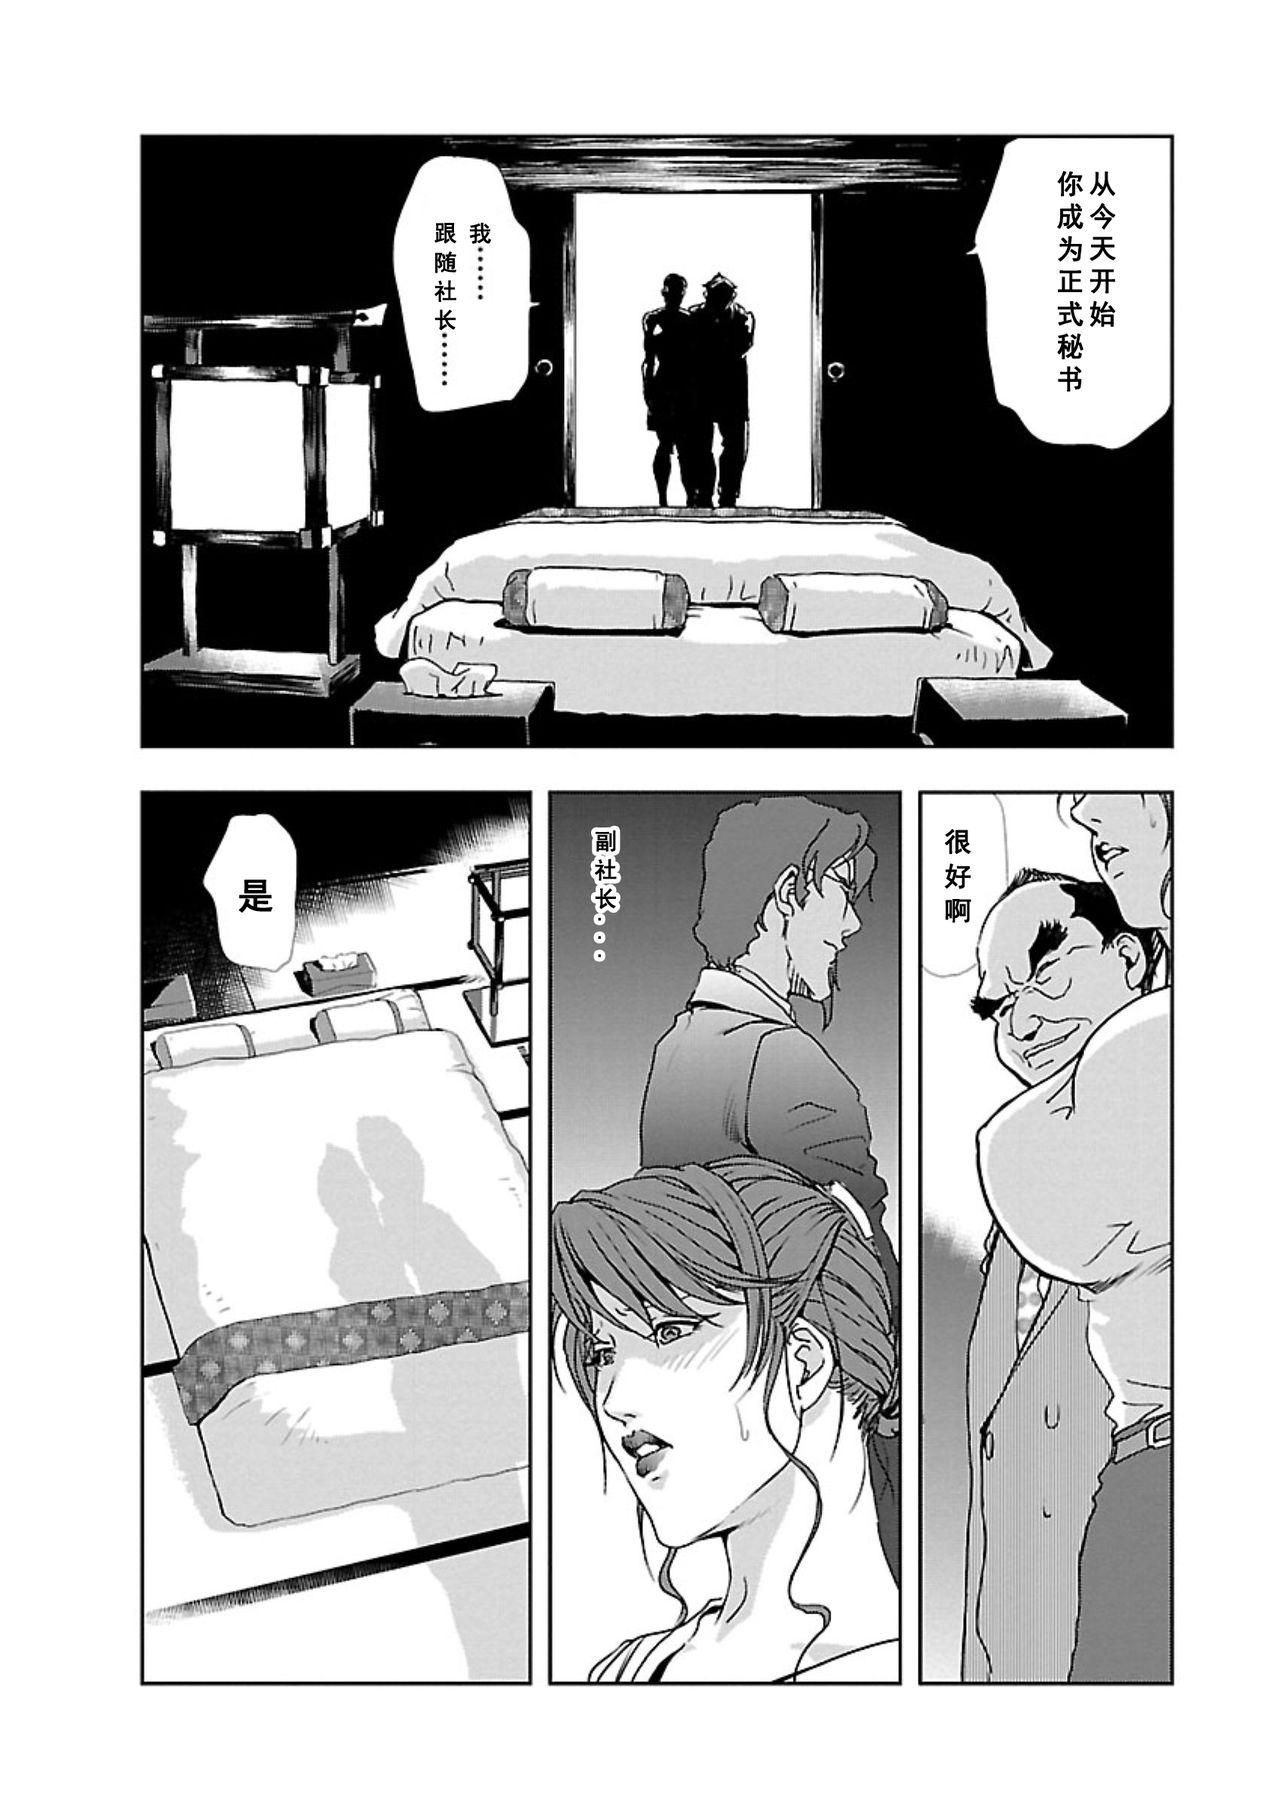 【不可视汉化】[Misaki Yukihiro] Nikuhisyo Yukiko chapter 06  [Digital] 17